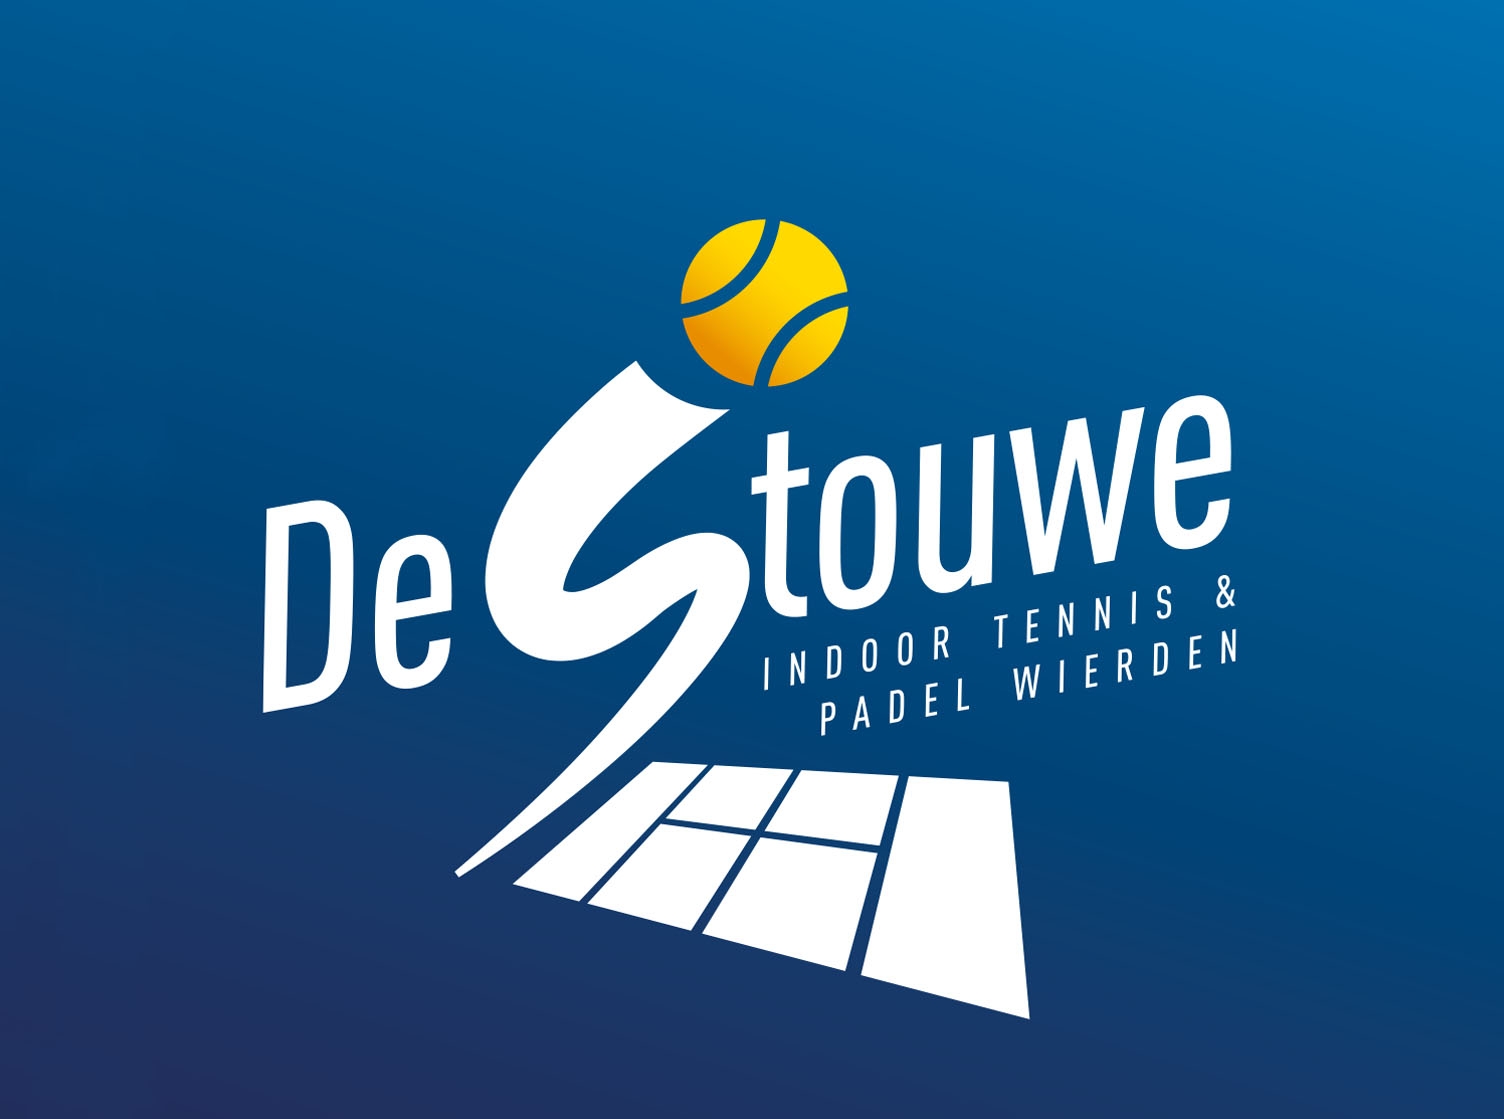 Logo De Stouwe, indoor tennis & padel Wierden